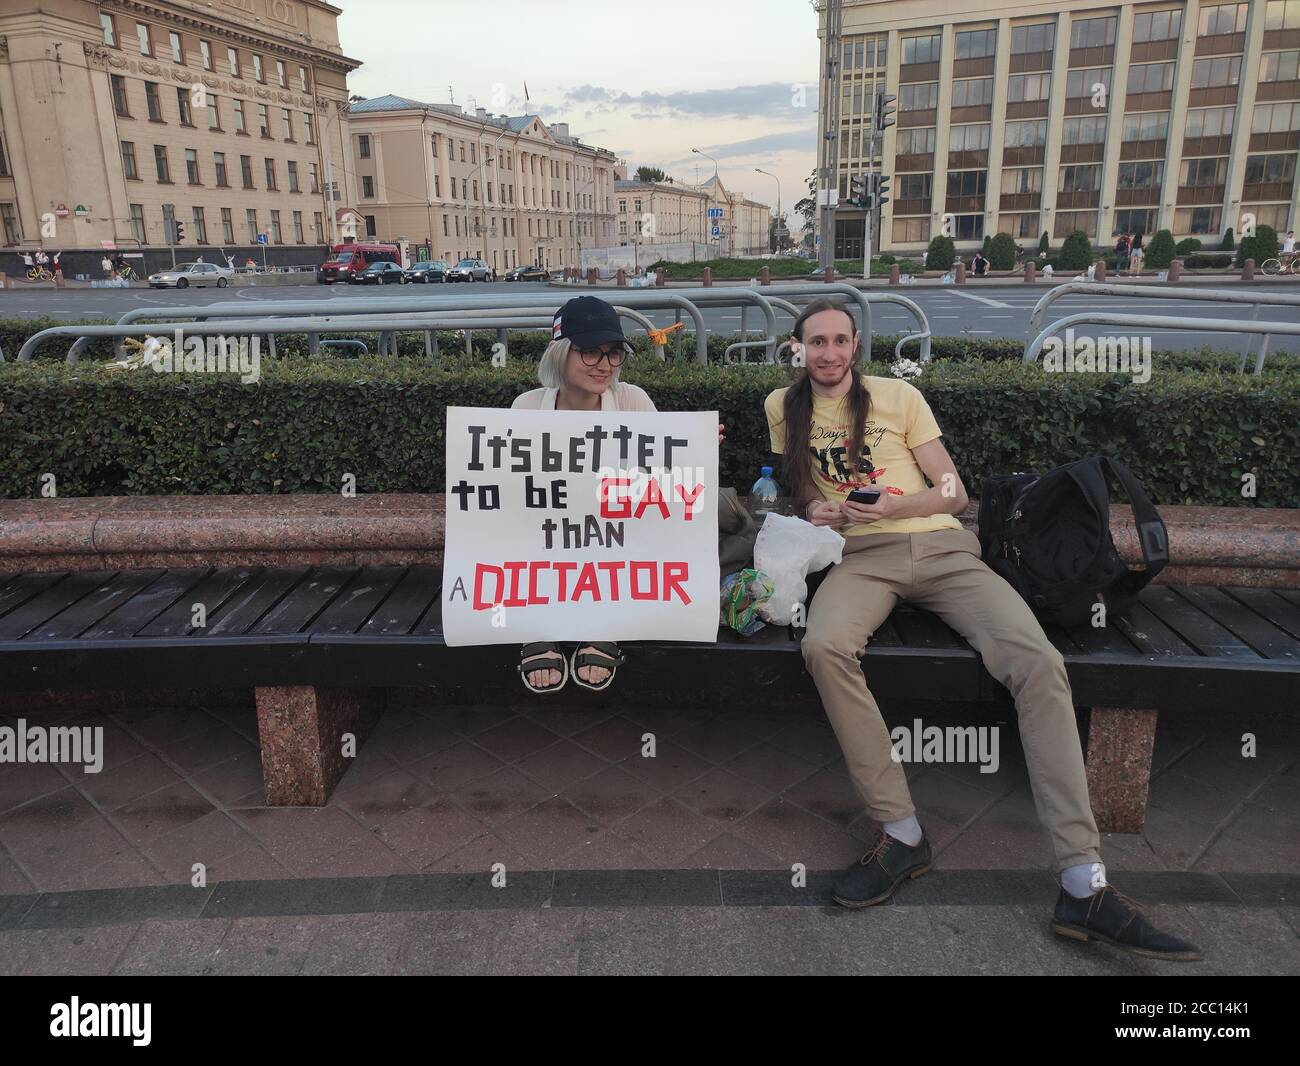 Minsk / Weißrussland - August 16 2020: Demonstratorin mit Plakat an den amtierenden Präsidenten: "Es ist besser, schwul zu sein als ein Diktator" Stockfoto